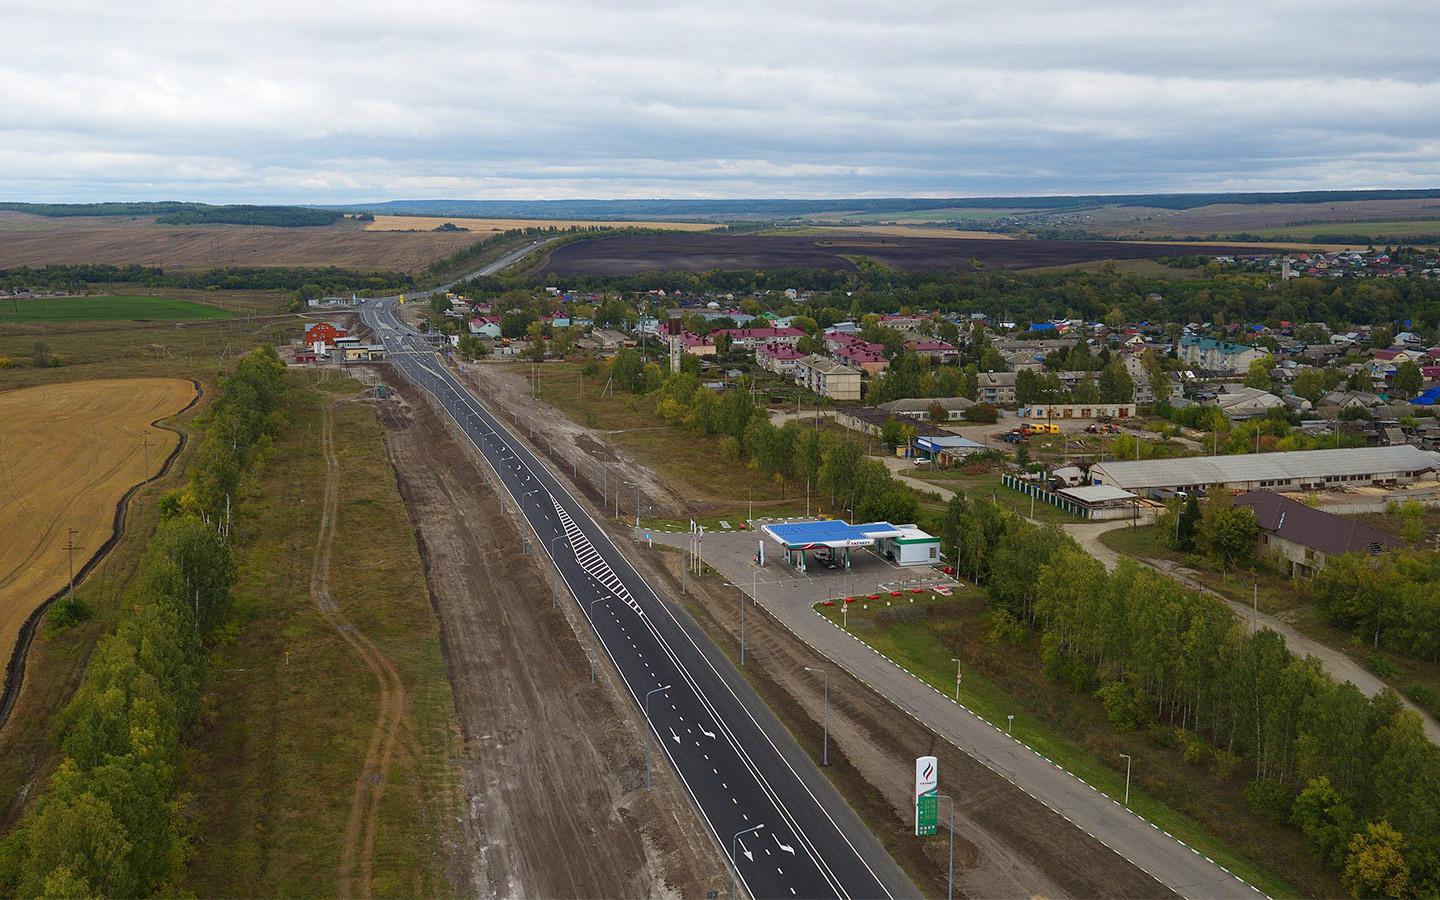 Участок М-5 Урал в посёлке Тереньга (Сызранское шоссе)